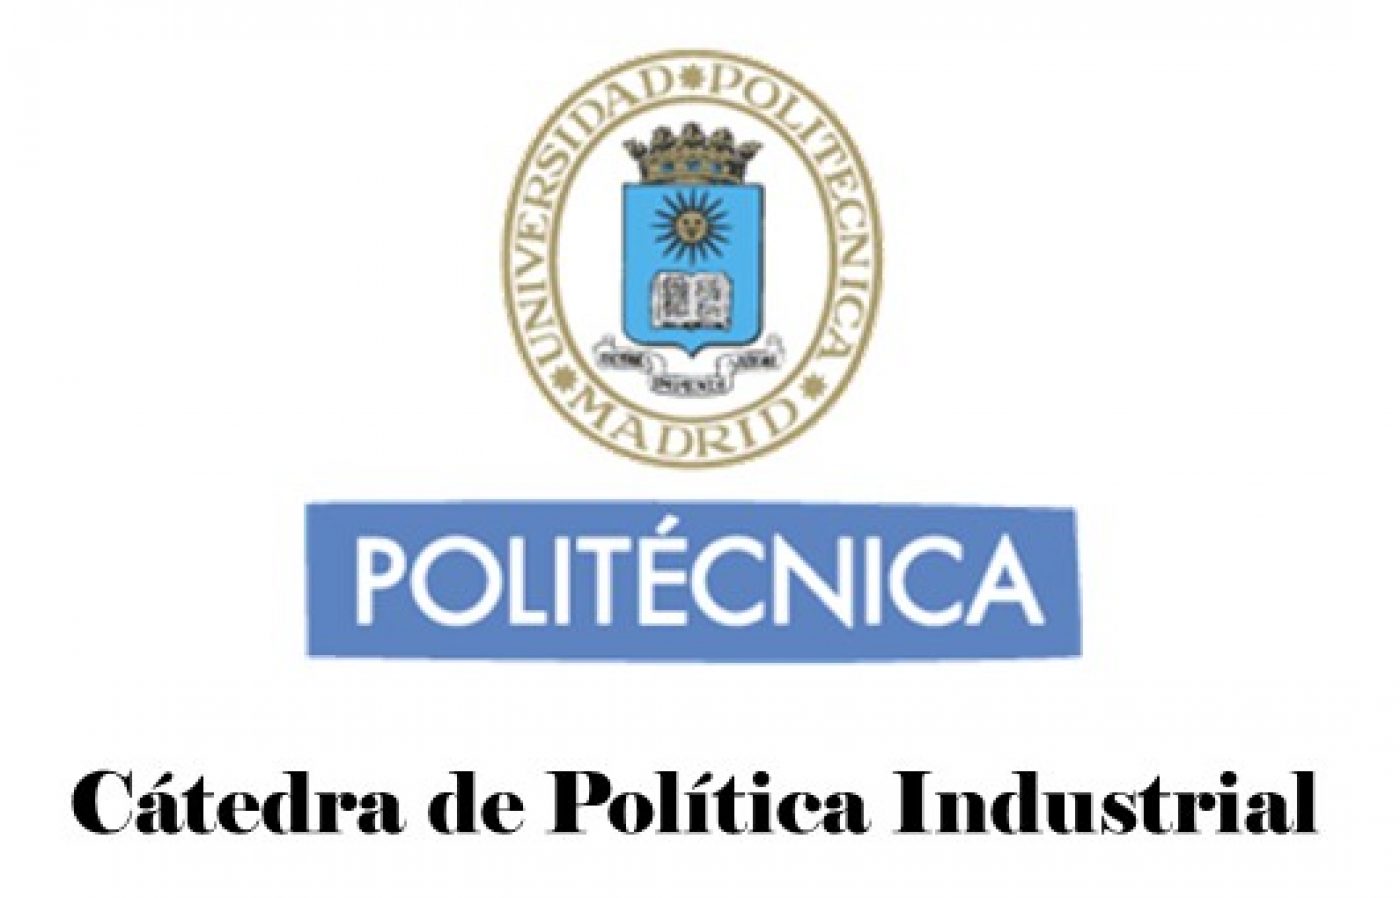 Sitio web de la Cátedra de Política Industrial de la UPM